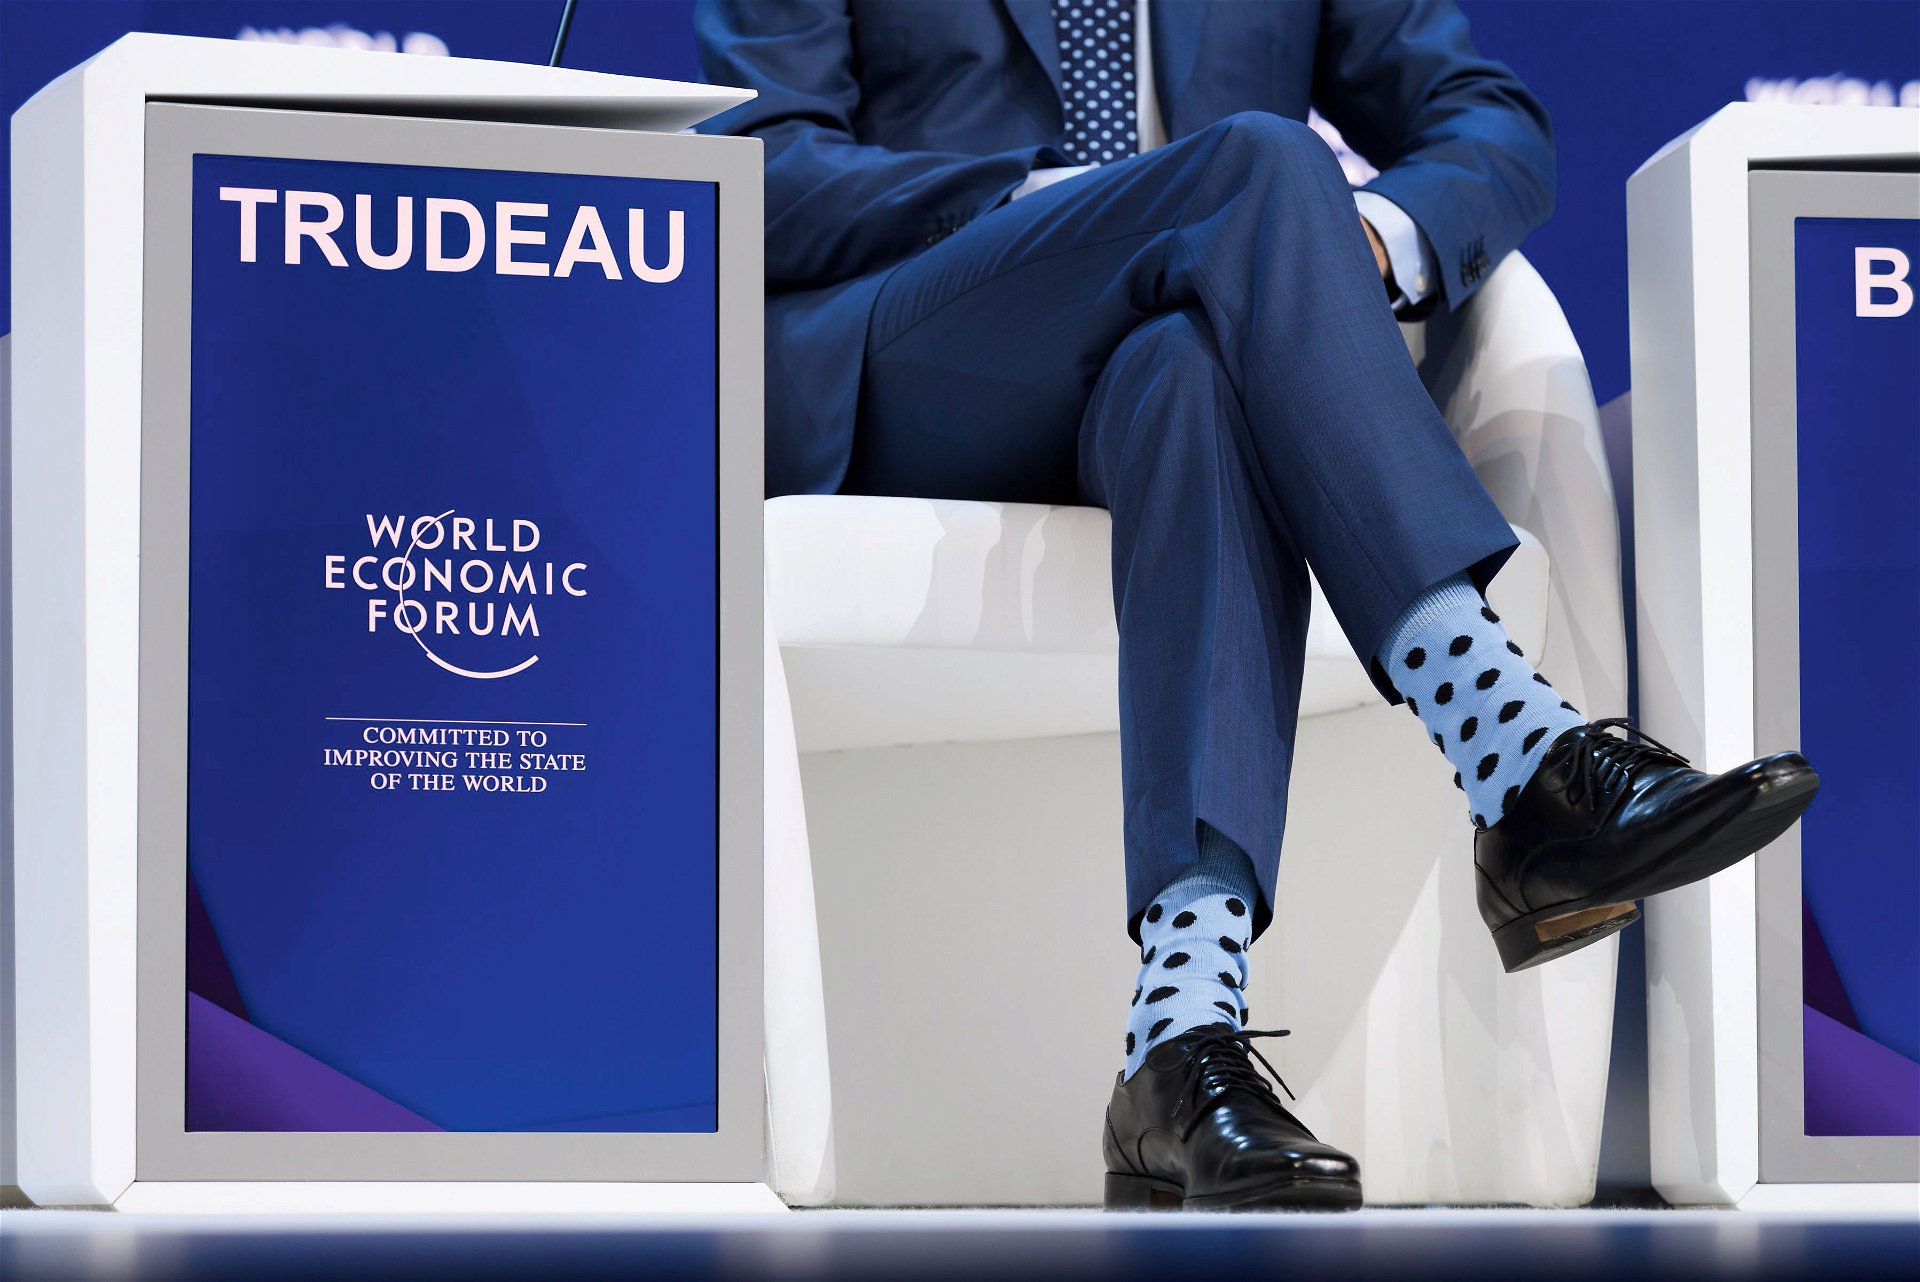 Statement: Der kanadische Premierminister Justin Trudeau (im Bild seine Beine) hat die Kommunikation über Socken kultiviert und weiß, wie Codes und Signale nonverbal gesendet werden.